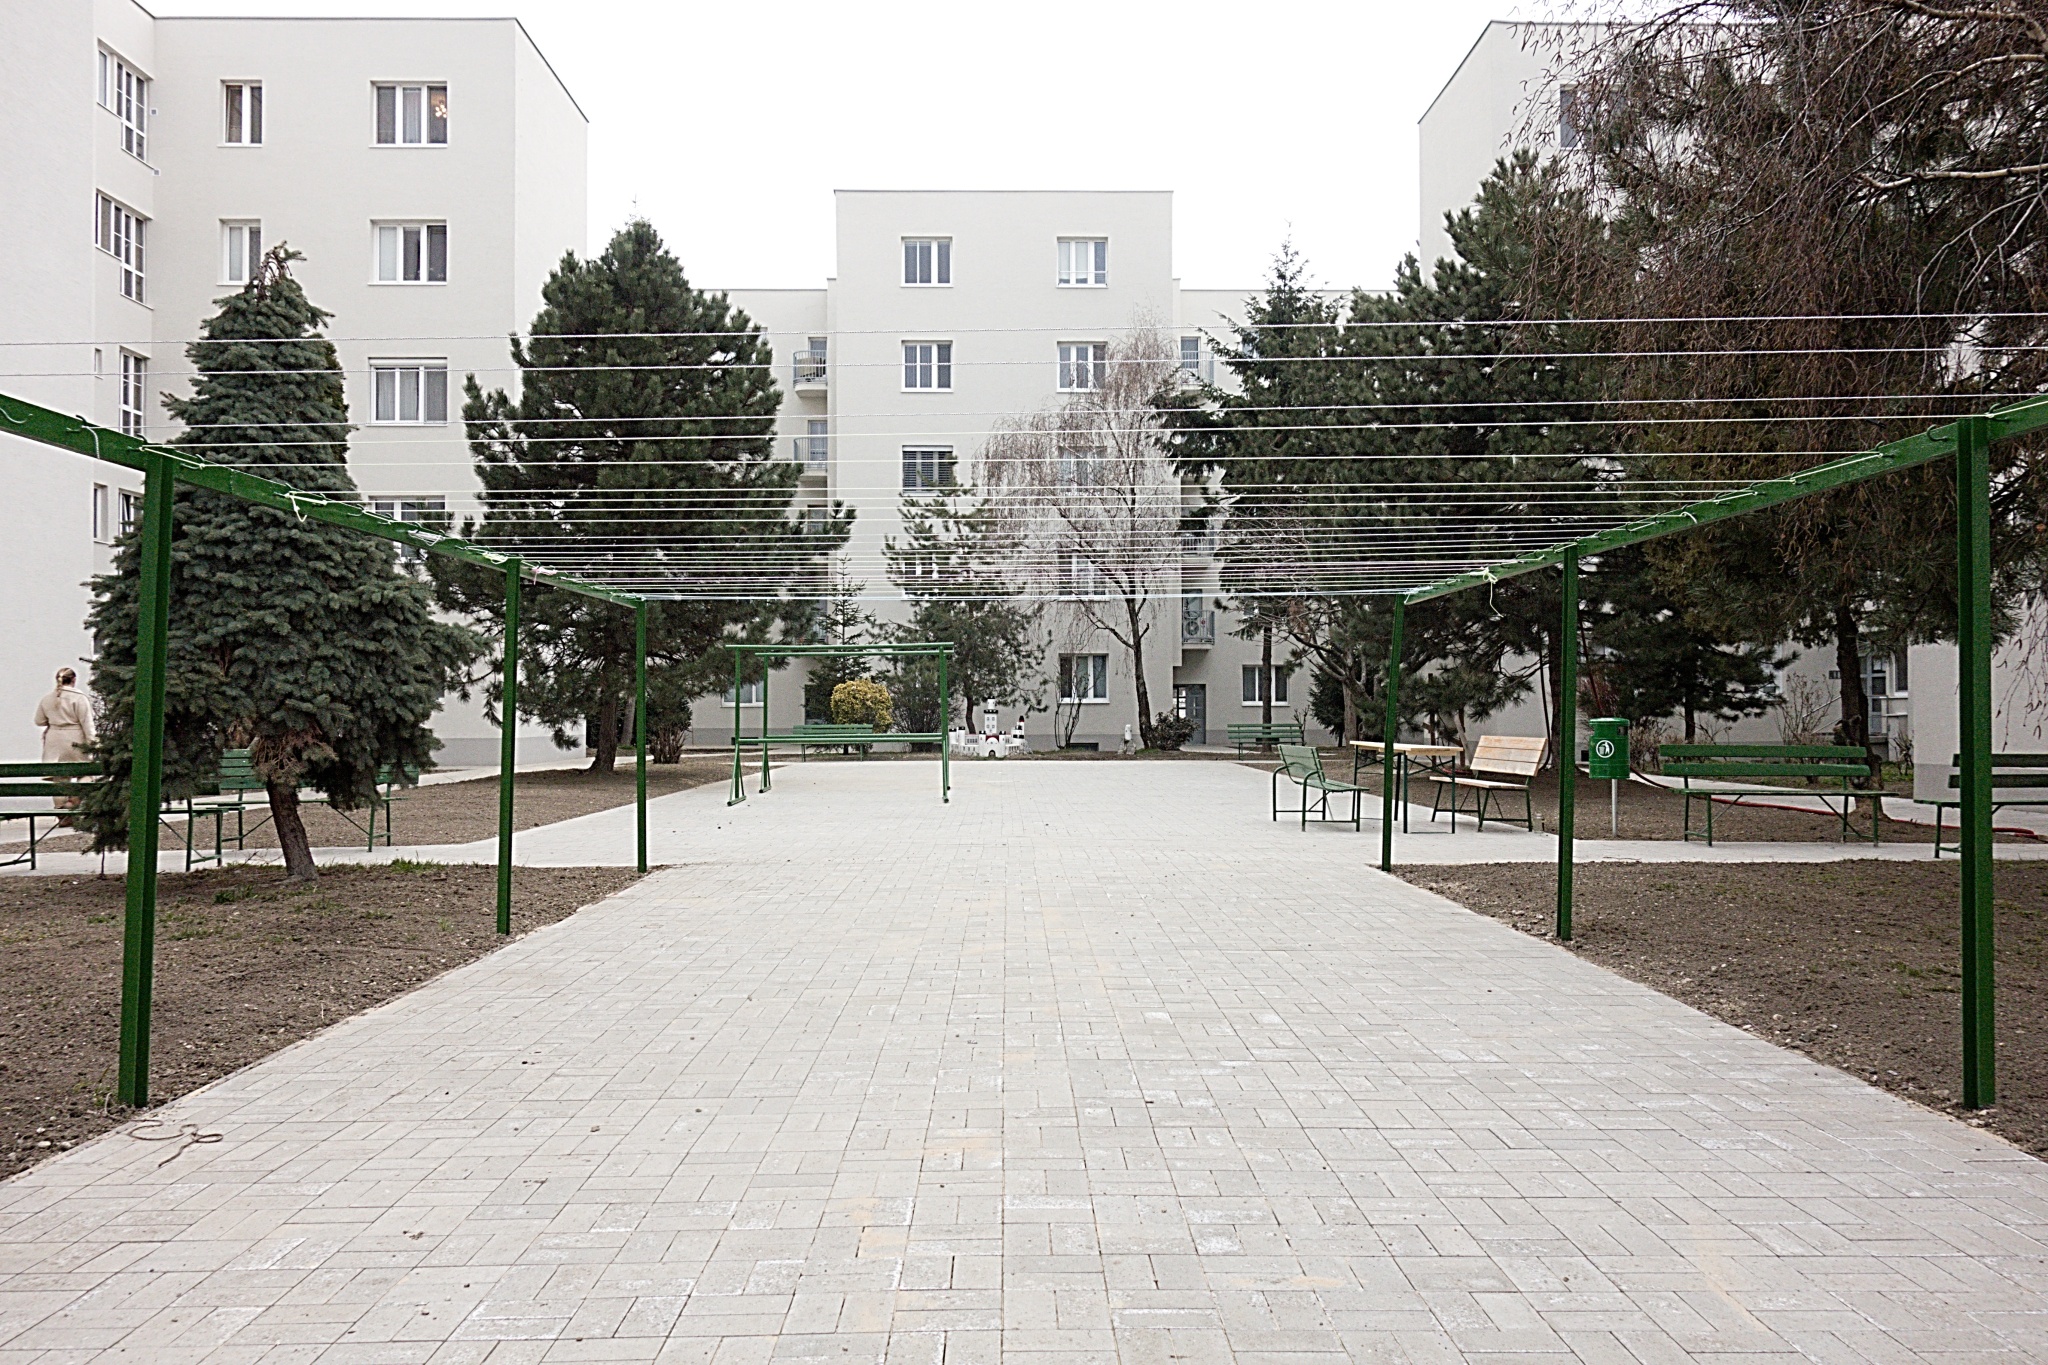 ARCHIWALK: ‘Nová doba’ – a pioneering work on social housing.